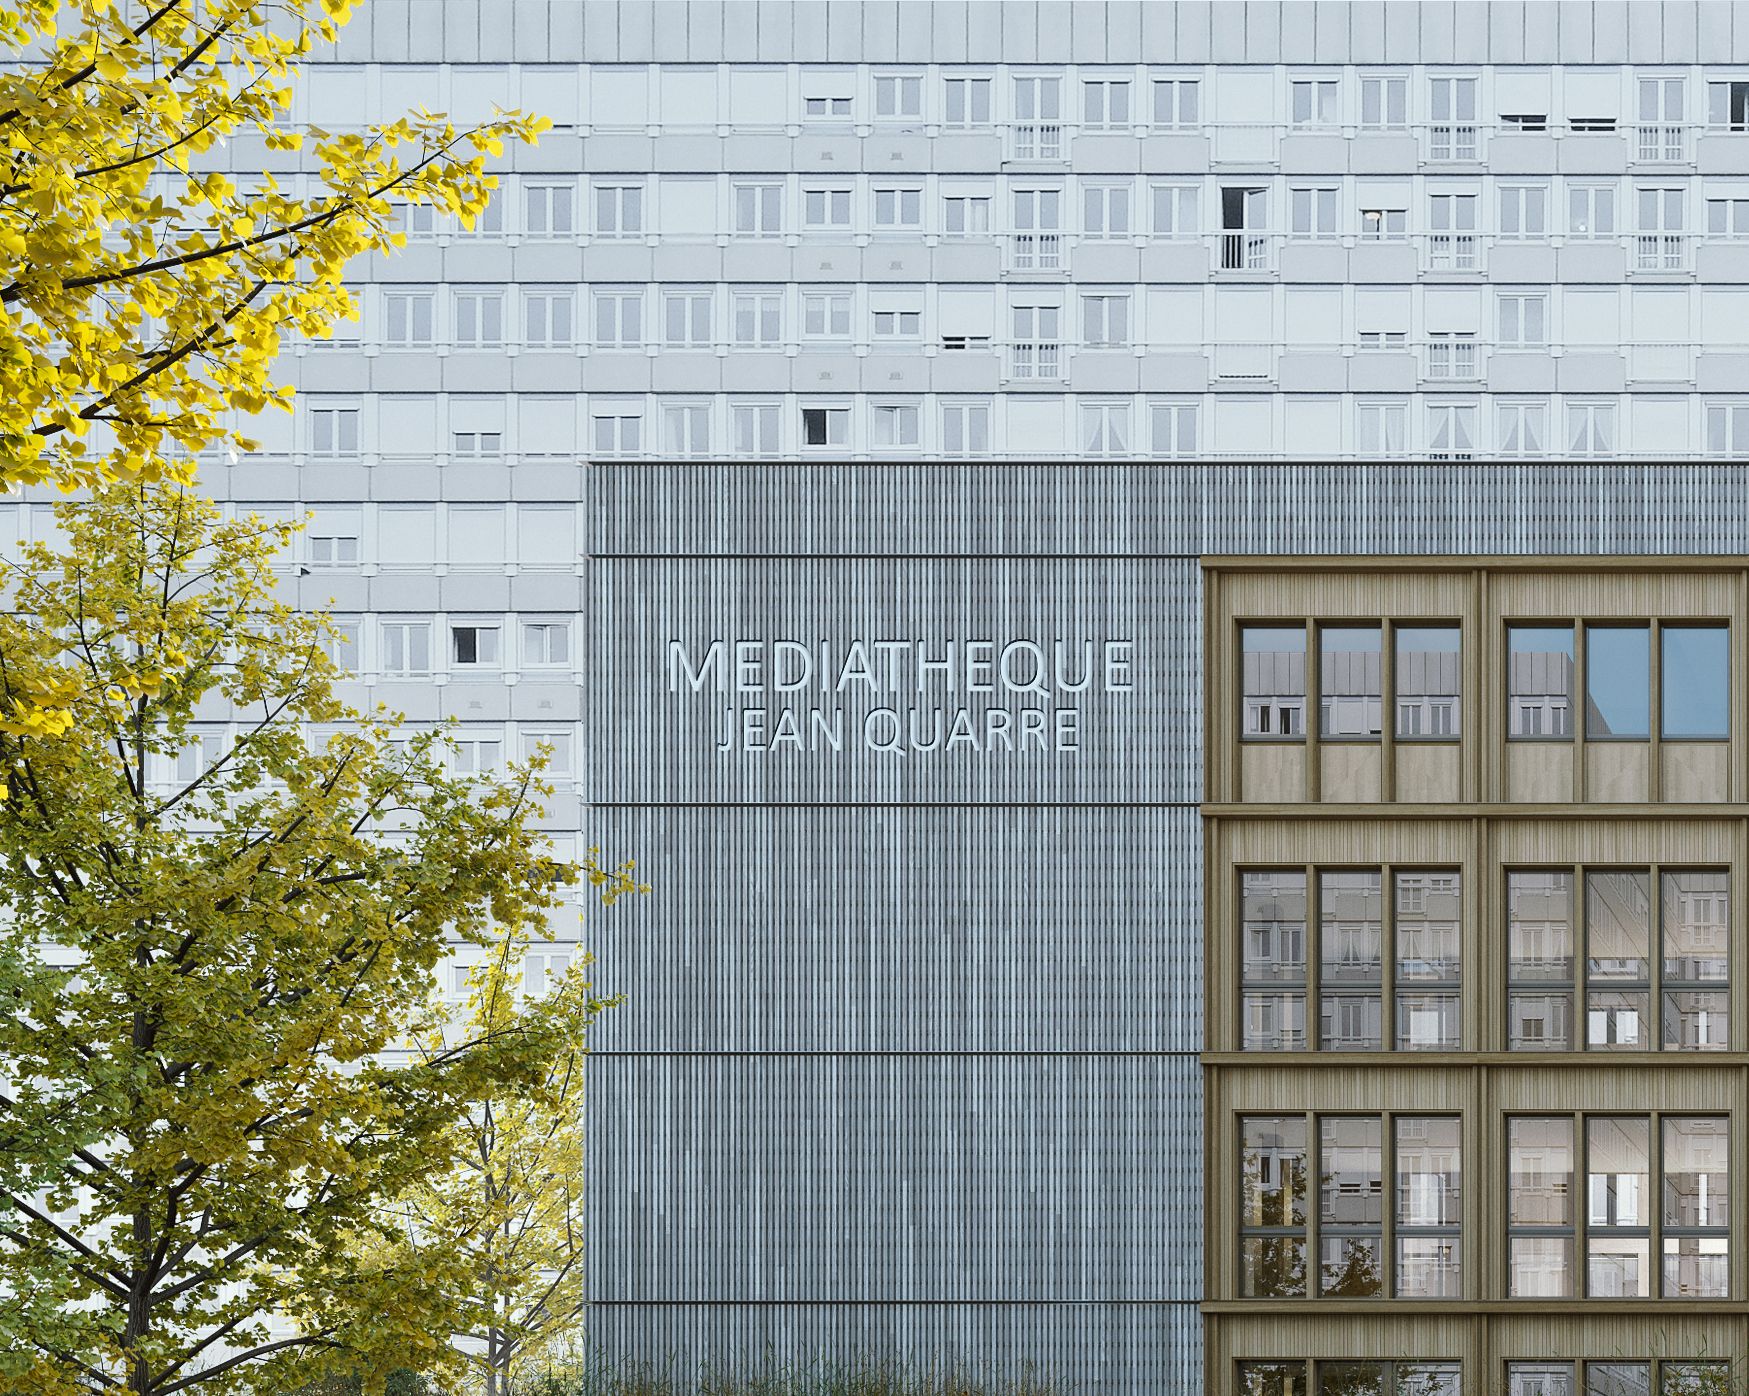 Supervue la architecture eqt paris mediatheque jean quarre Medium